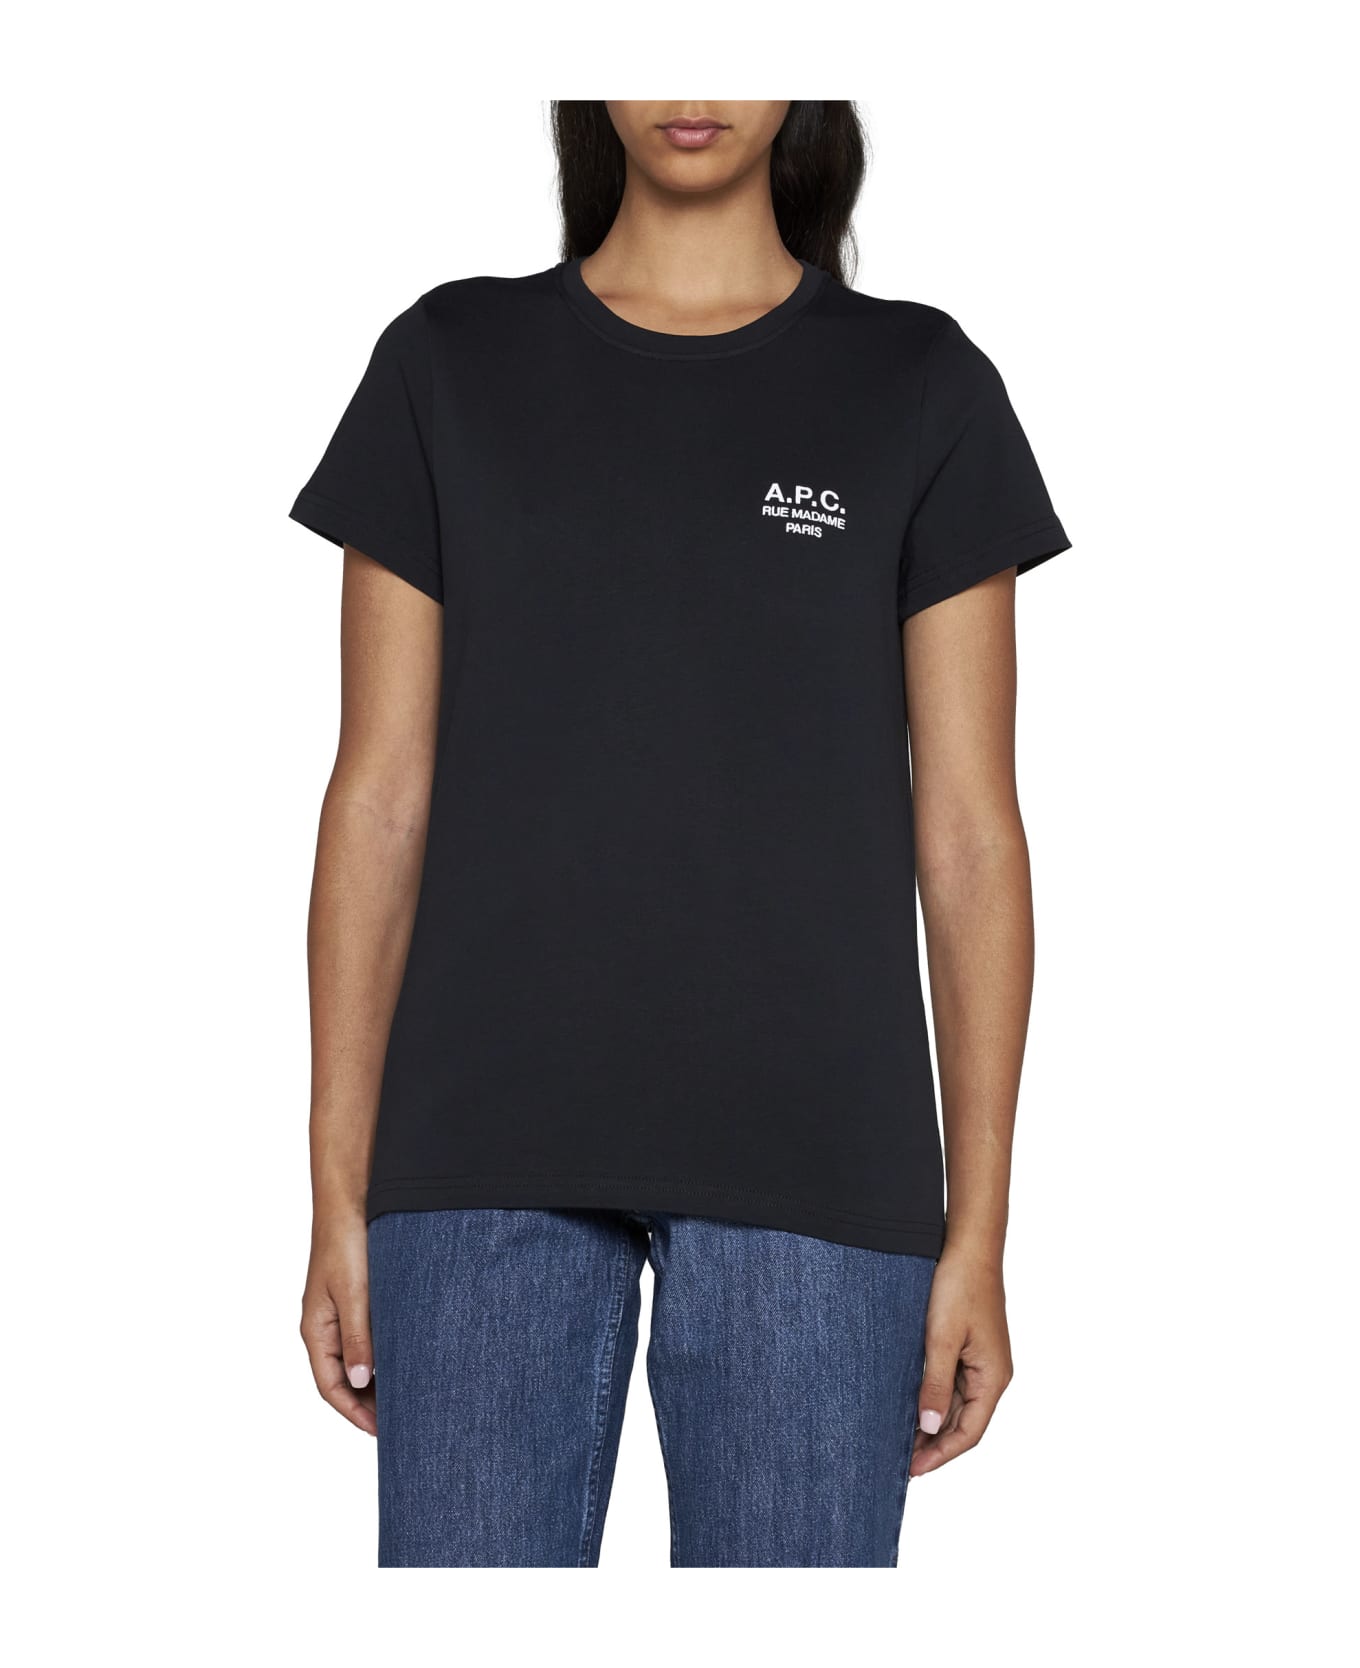 A.P.C. Denise T-shirt - Black